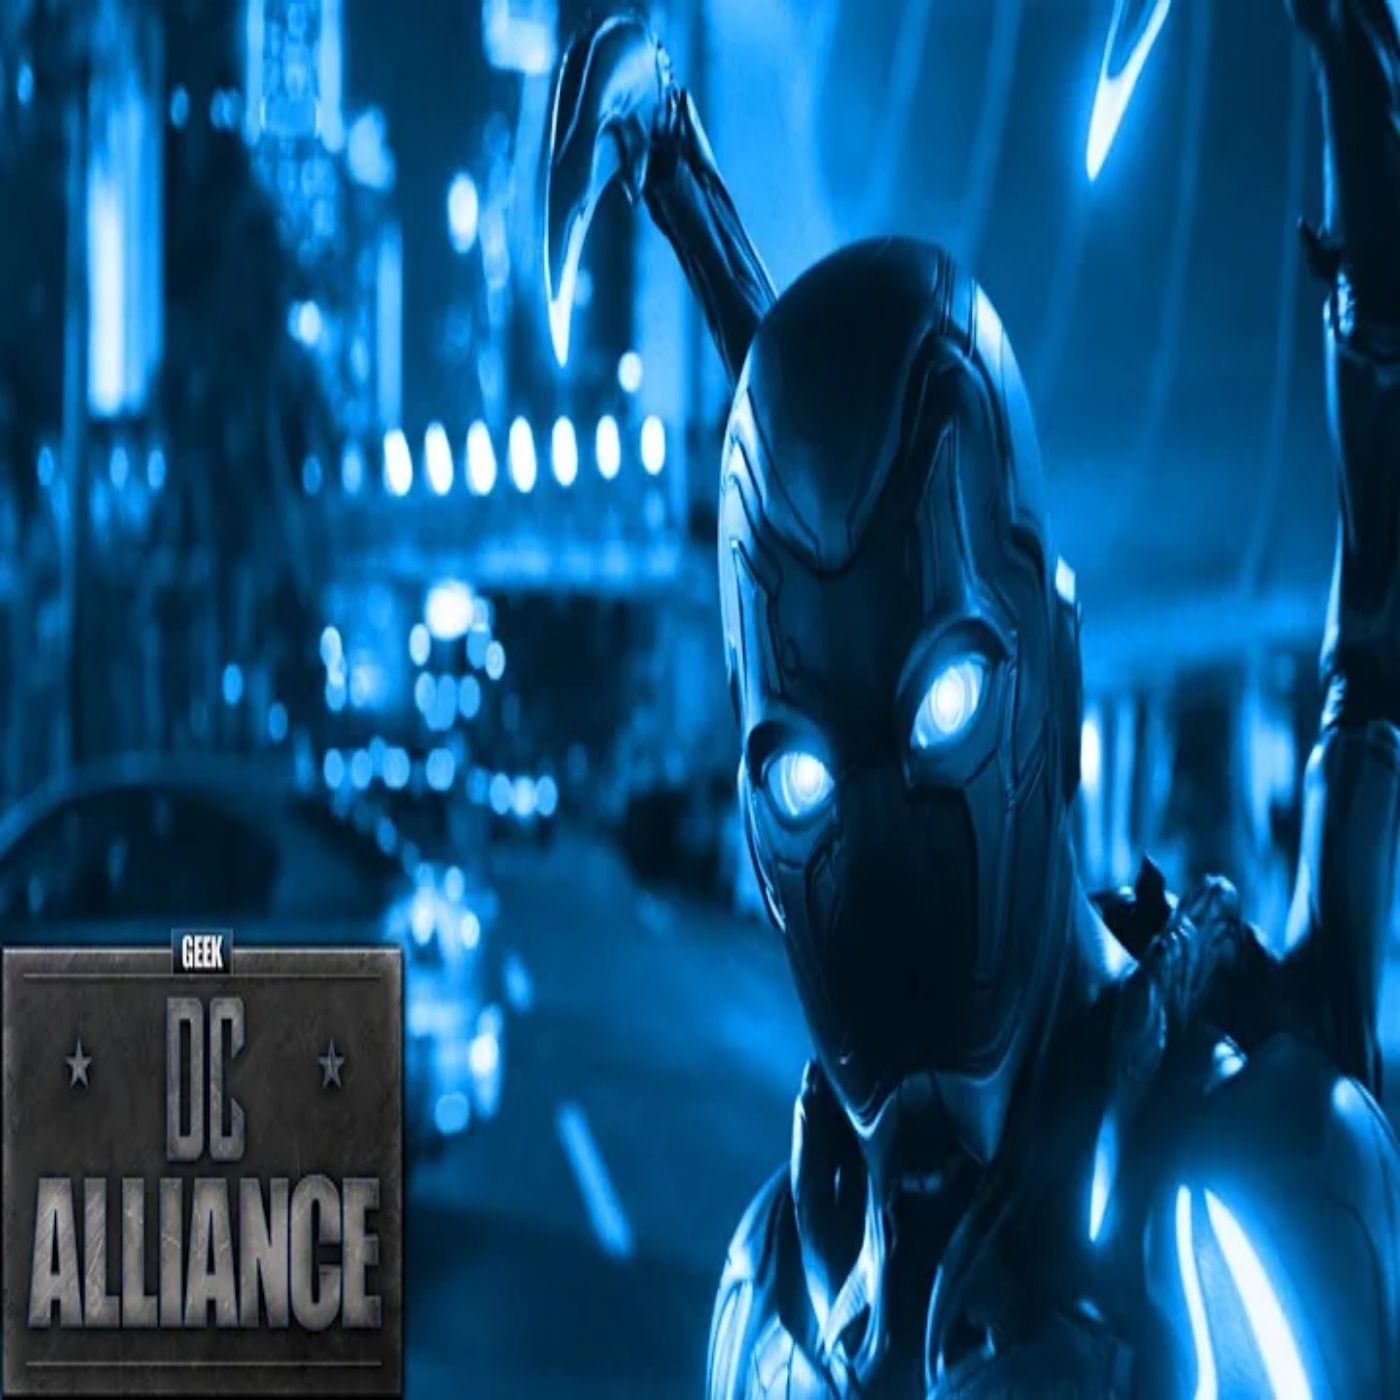 DC Alliance 183 Blue Beetle Trailer 2 Breakdown